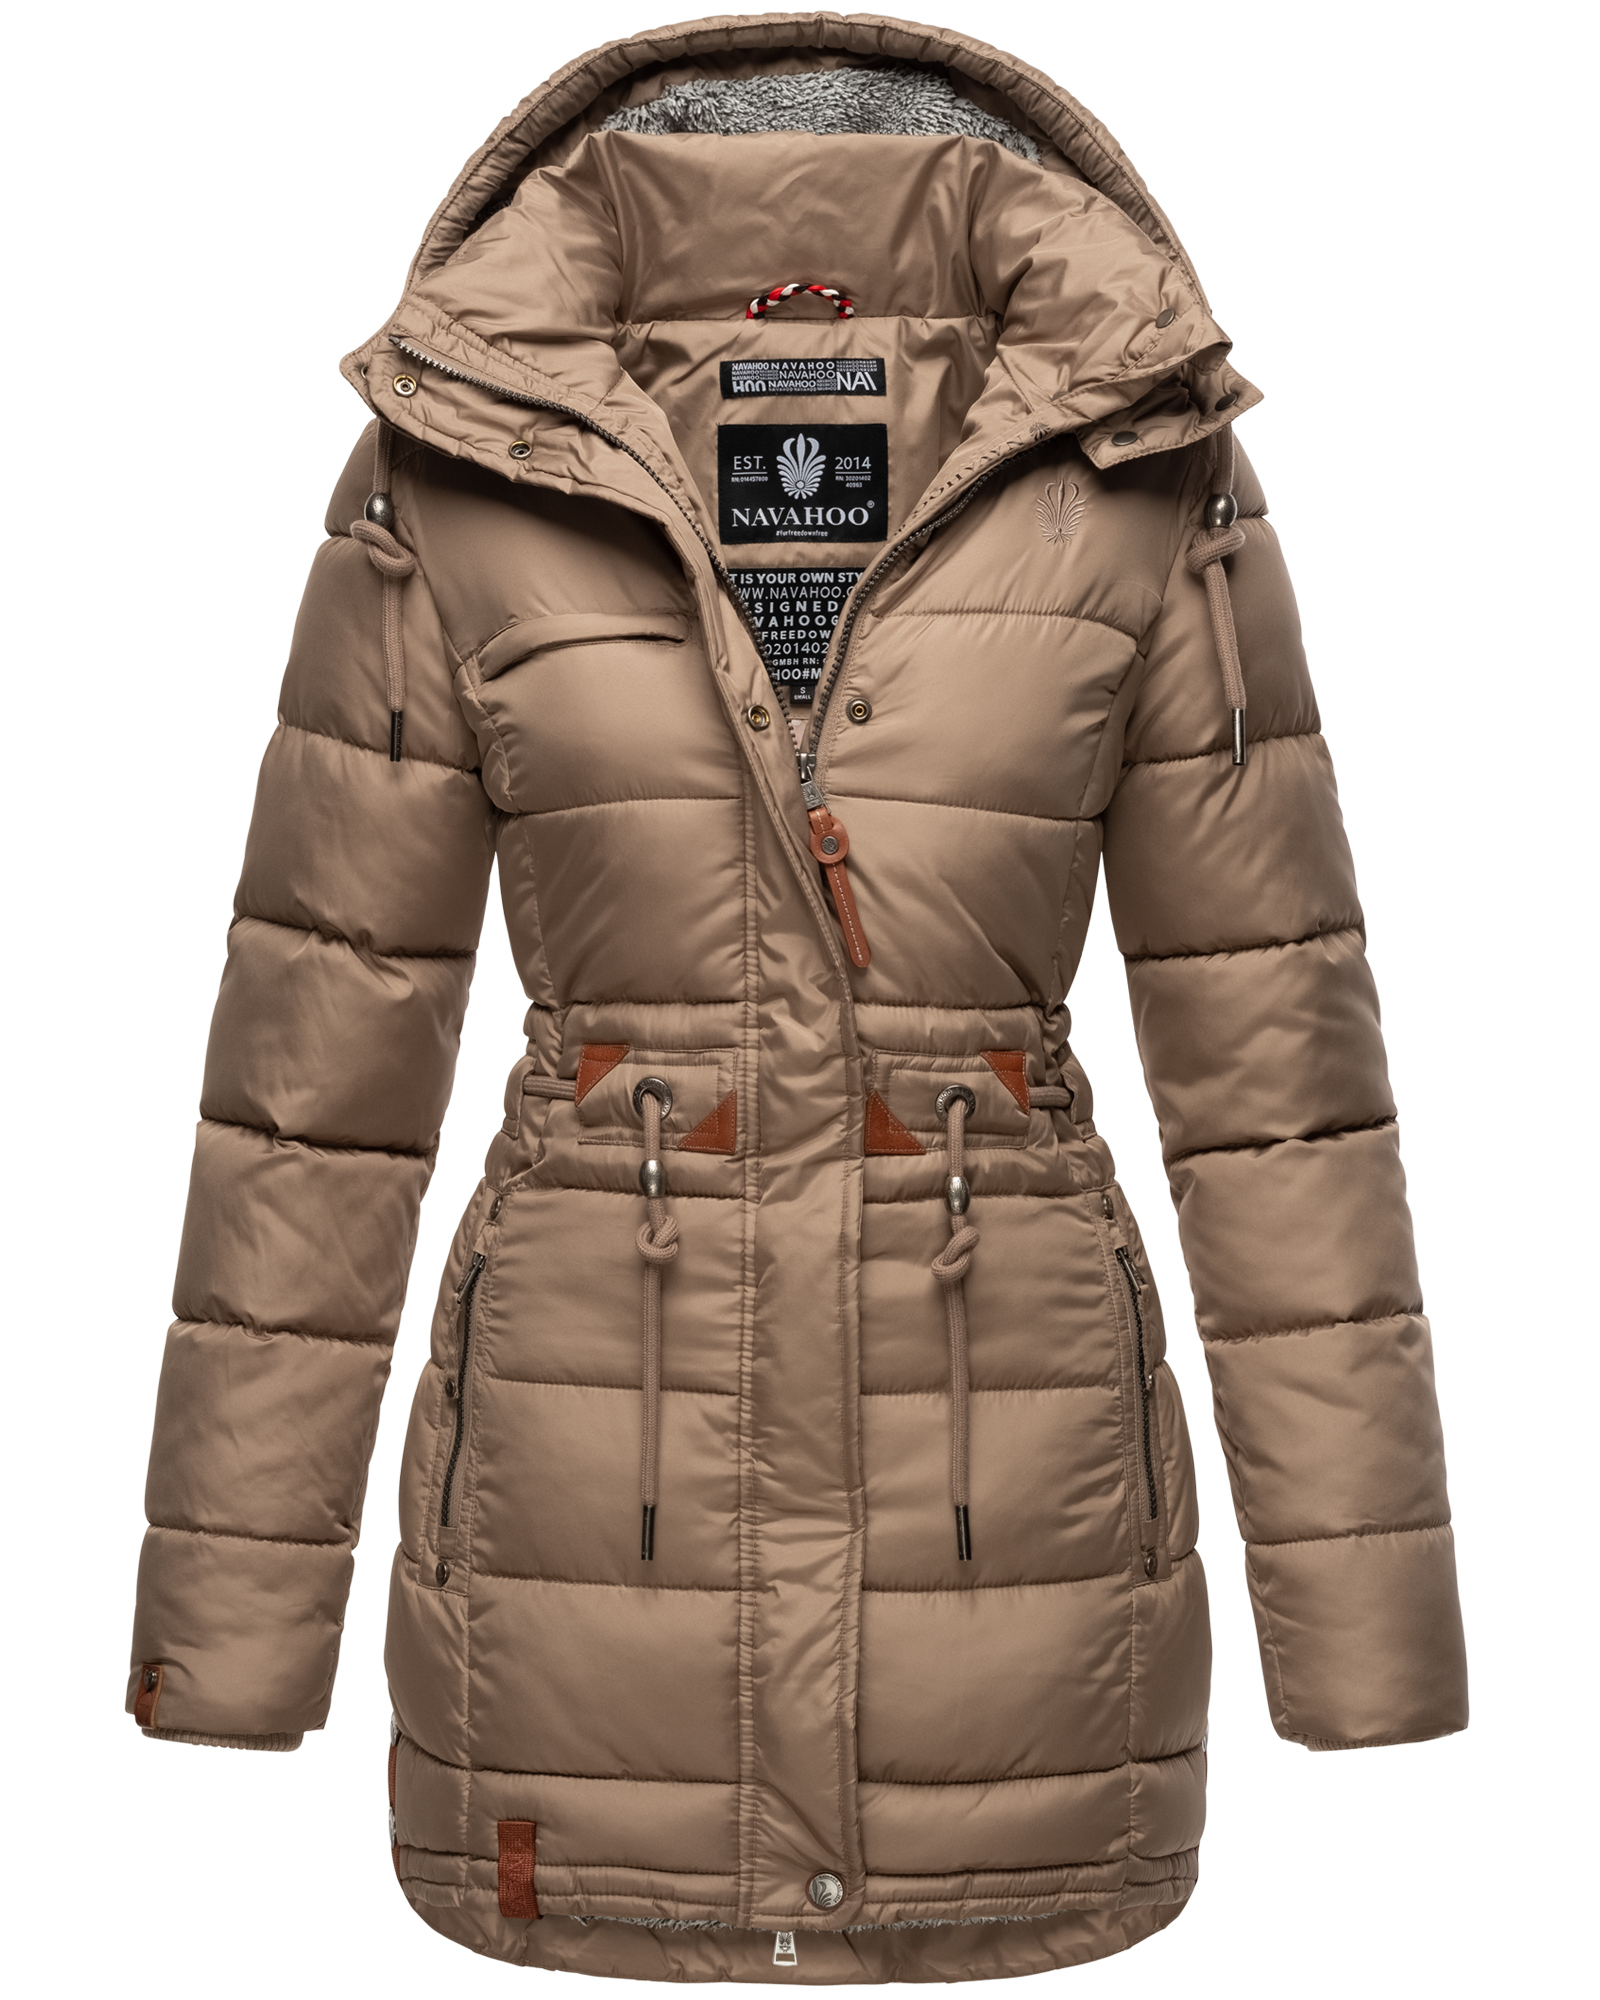 Dámský zimní kabát prošívaný kabát Daliee Navahoo - TAUPE Velikost: XXL